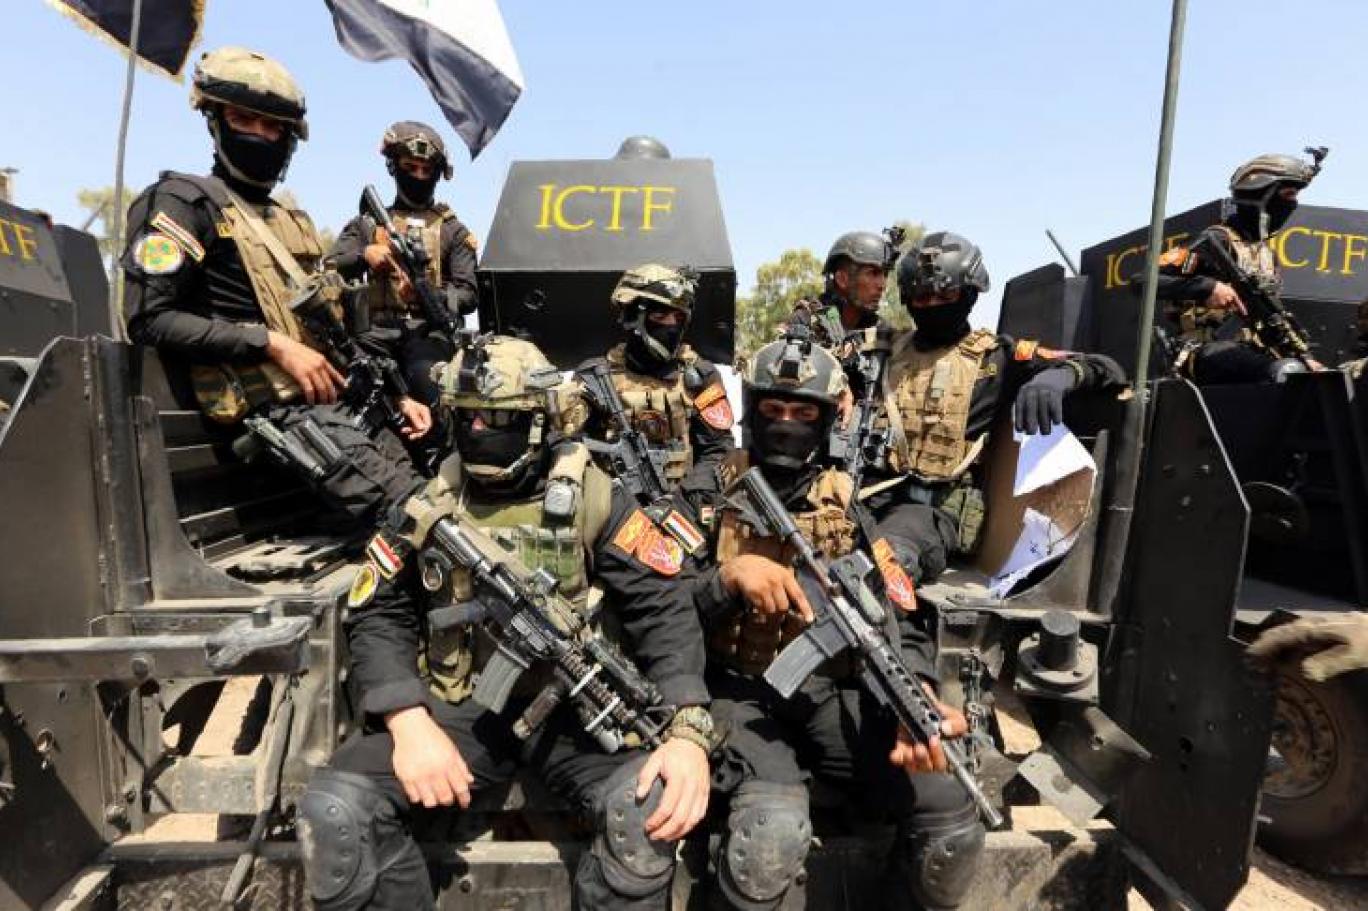 تقرير غربي يضعها بين الأكثر رُعباً في العالم.. "الفرقة الذهبية" العراقية آلة لمكافحة الإرهاب